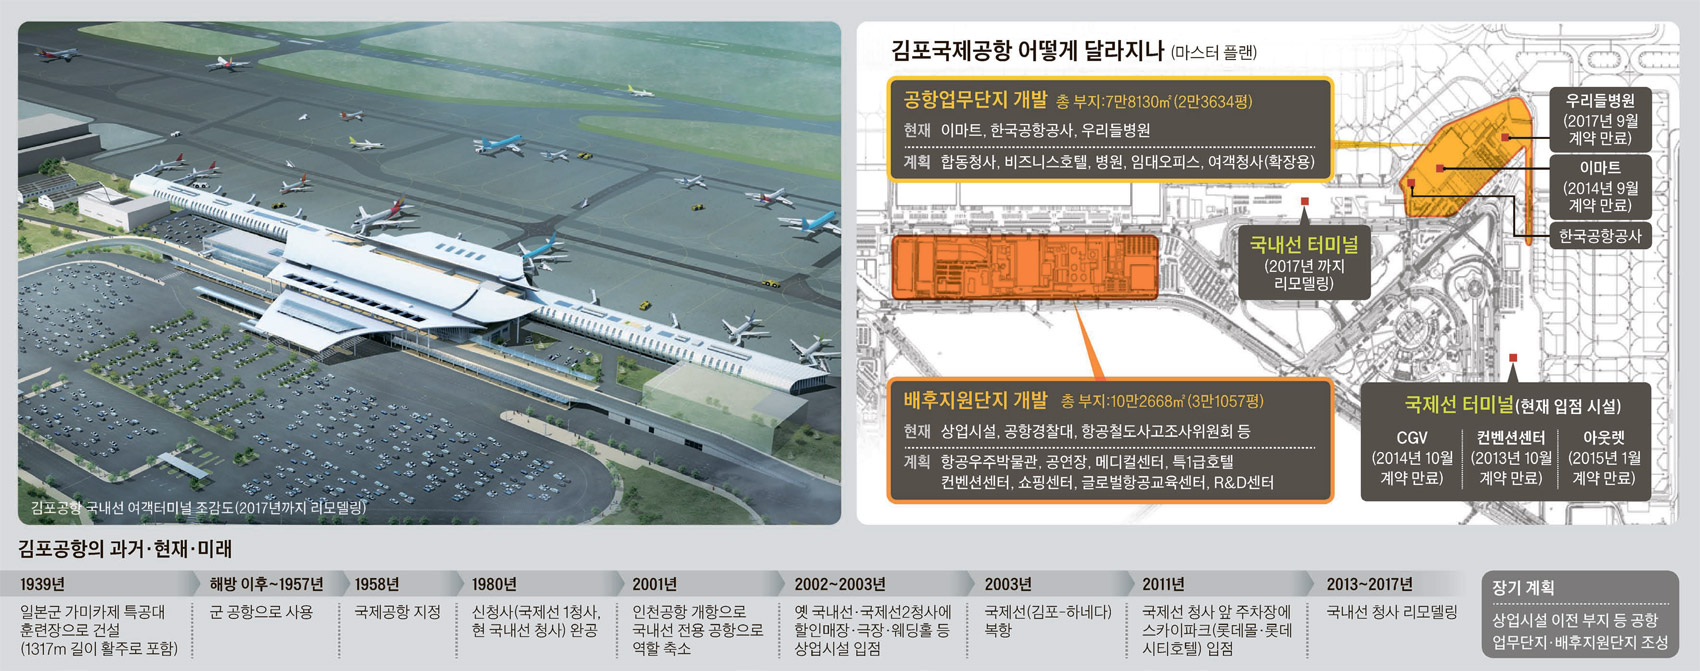 김포공항 부활 날갯짓 .. 33년 만에 터미널 리모델링 | Daum 부동산